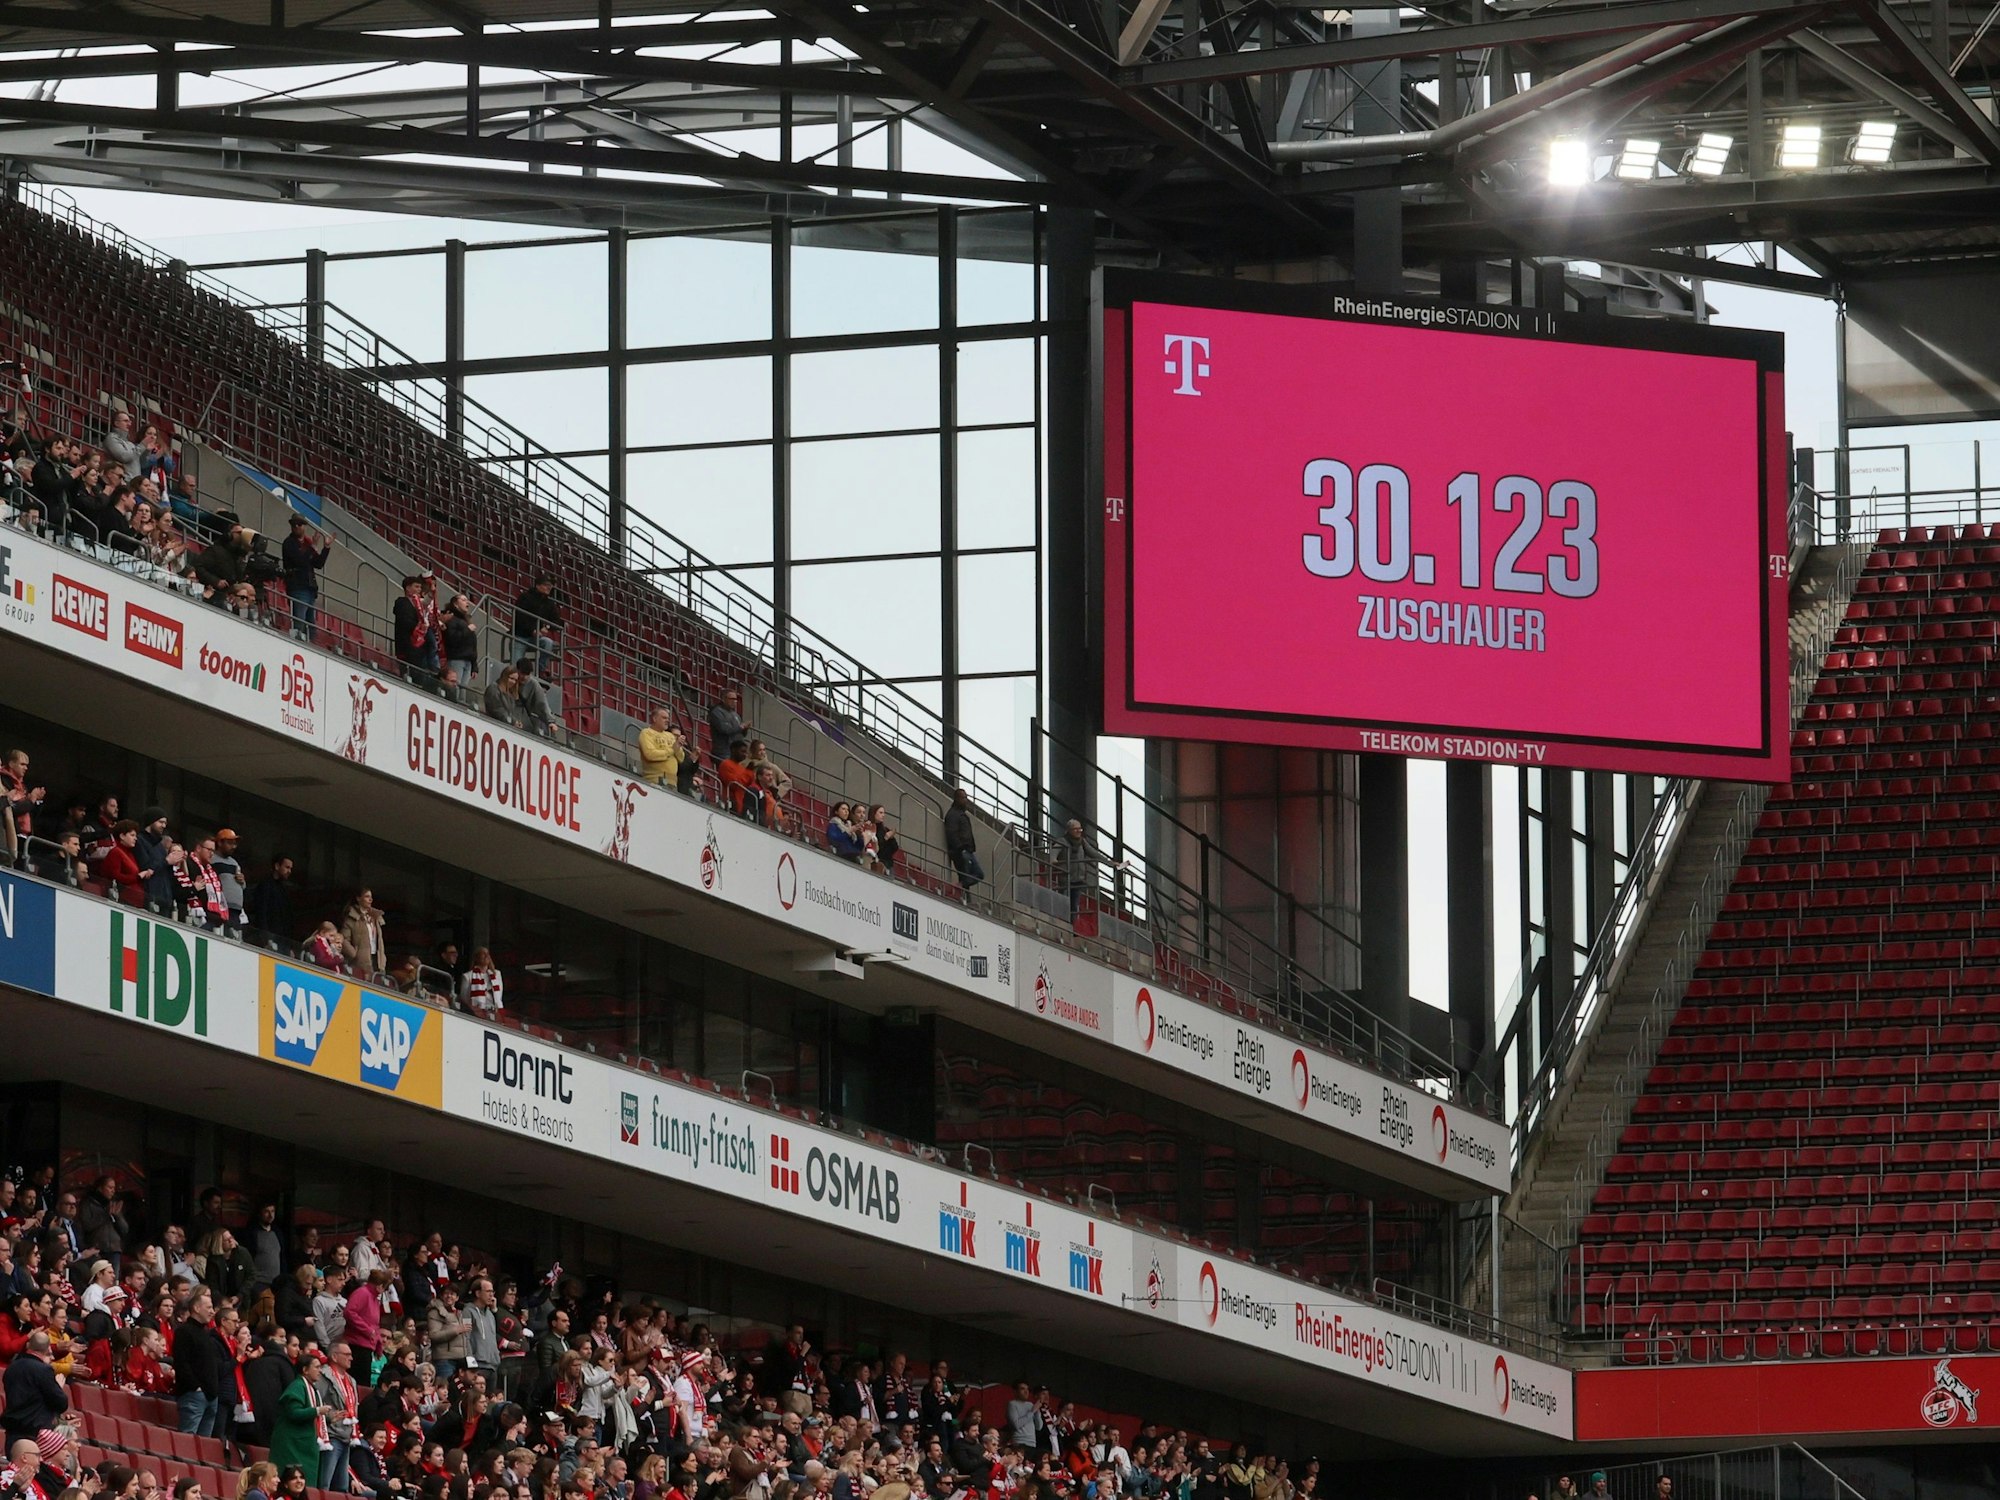 Die offizielle Zuschauerzahl im Rhein-Energie-Stadion.